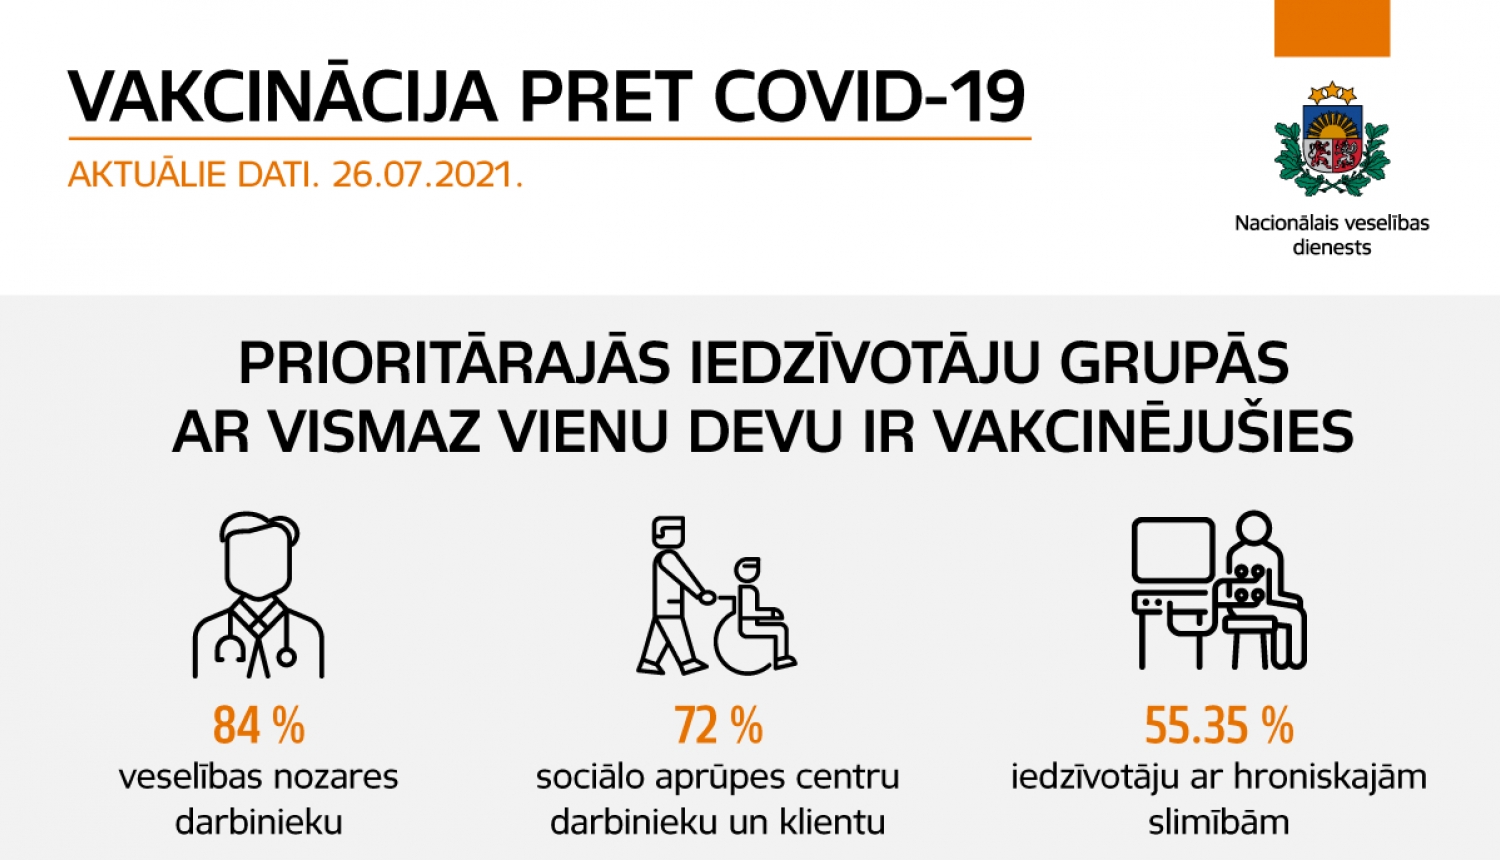 Veselības nozares darbinieku vidū vakcinācijas pret Covid-19 sasniegusi 84%